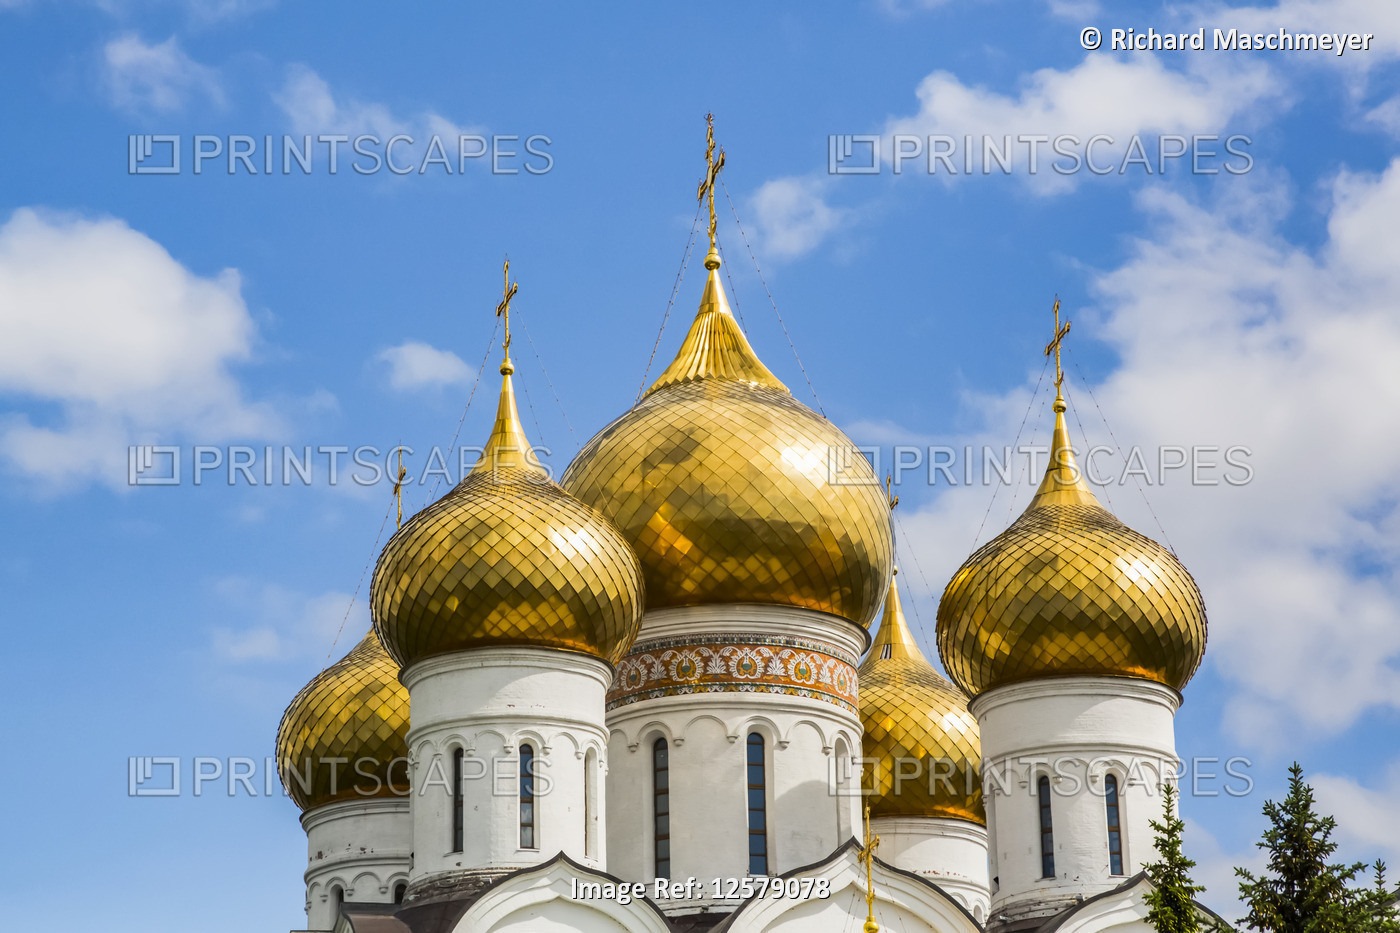 Assumption Cathedral; Yaroslavl, Yaroslavl Oblast, Russia